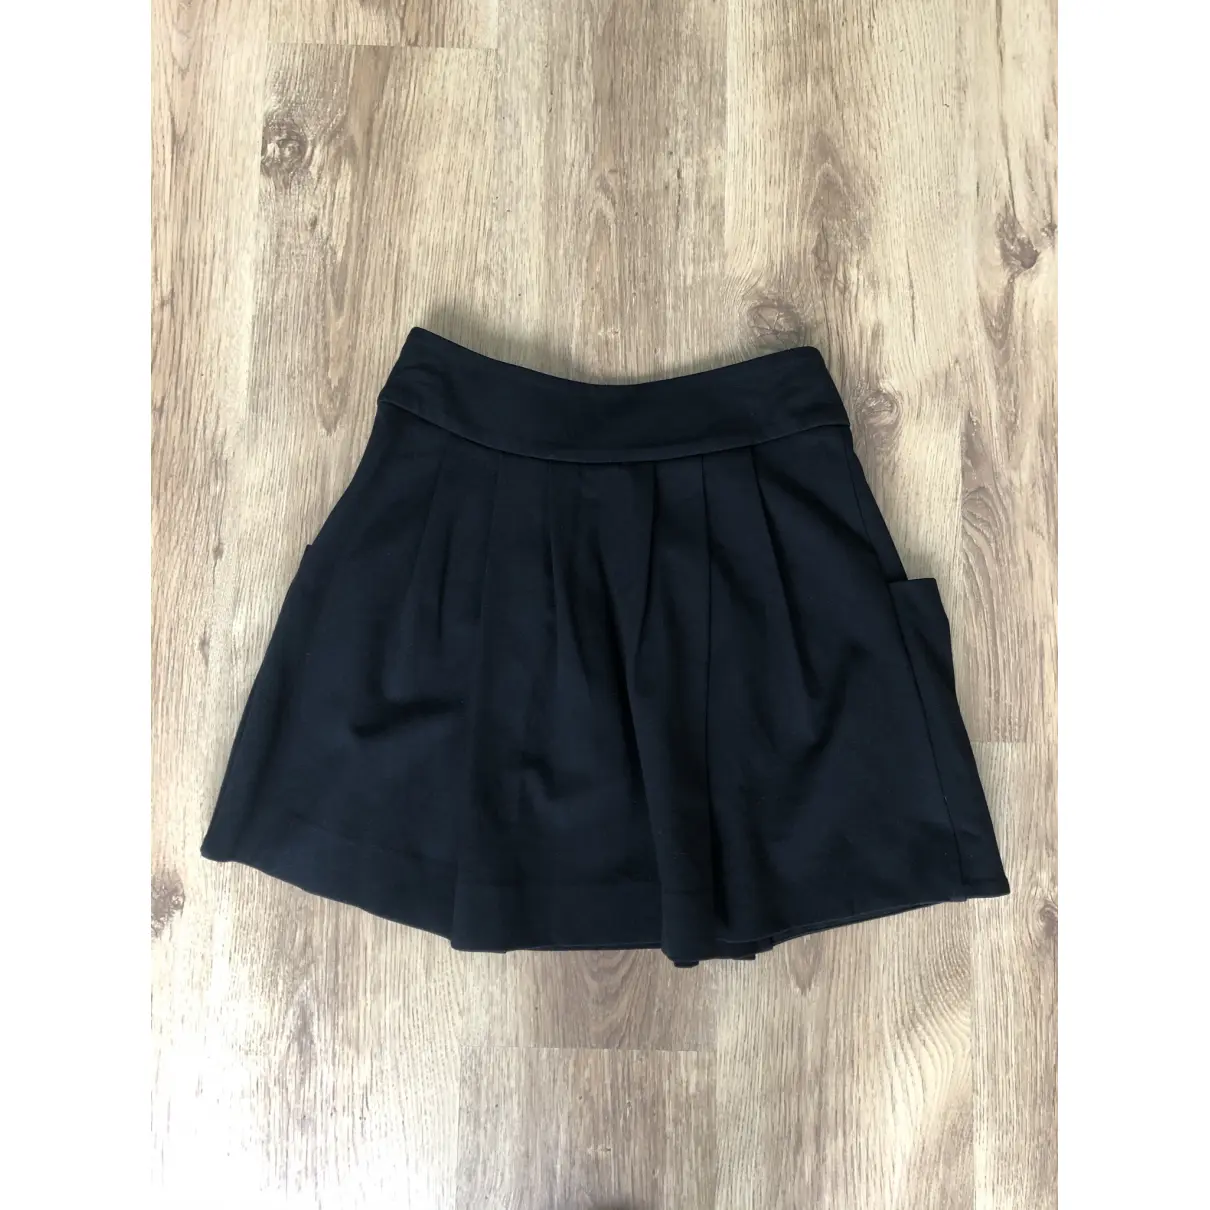 Buy Lacoste Mini skirt online